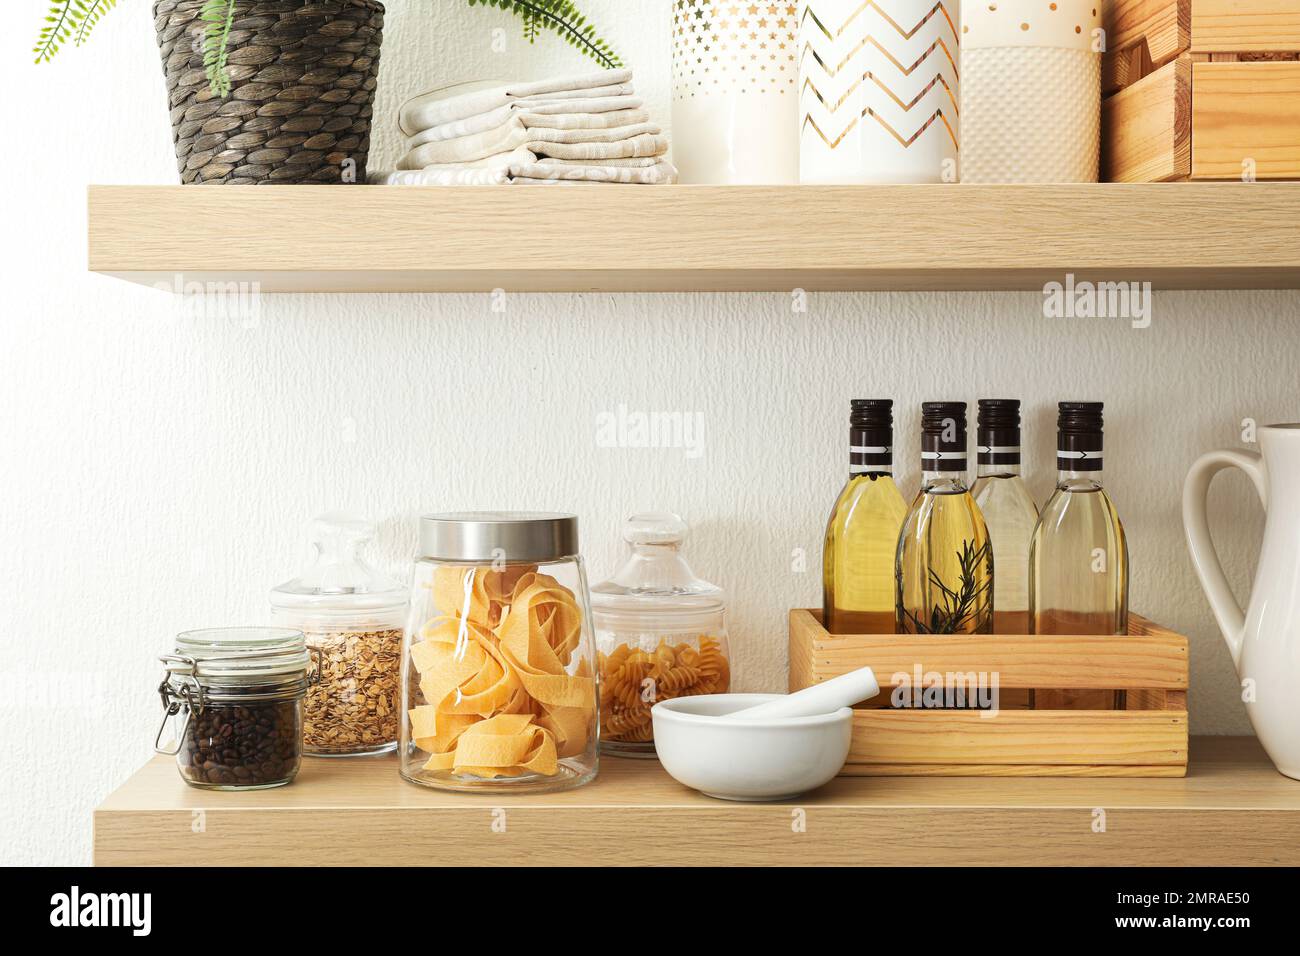 Étagères en bois avec vaisselle et produits sur un mur blanc. Idée d'intérieur de cuisine Banque D'Images